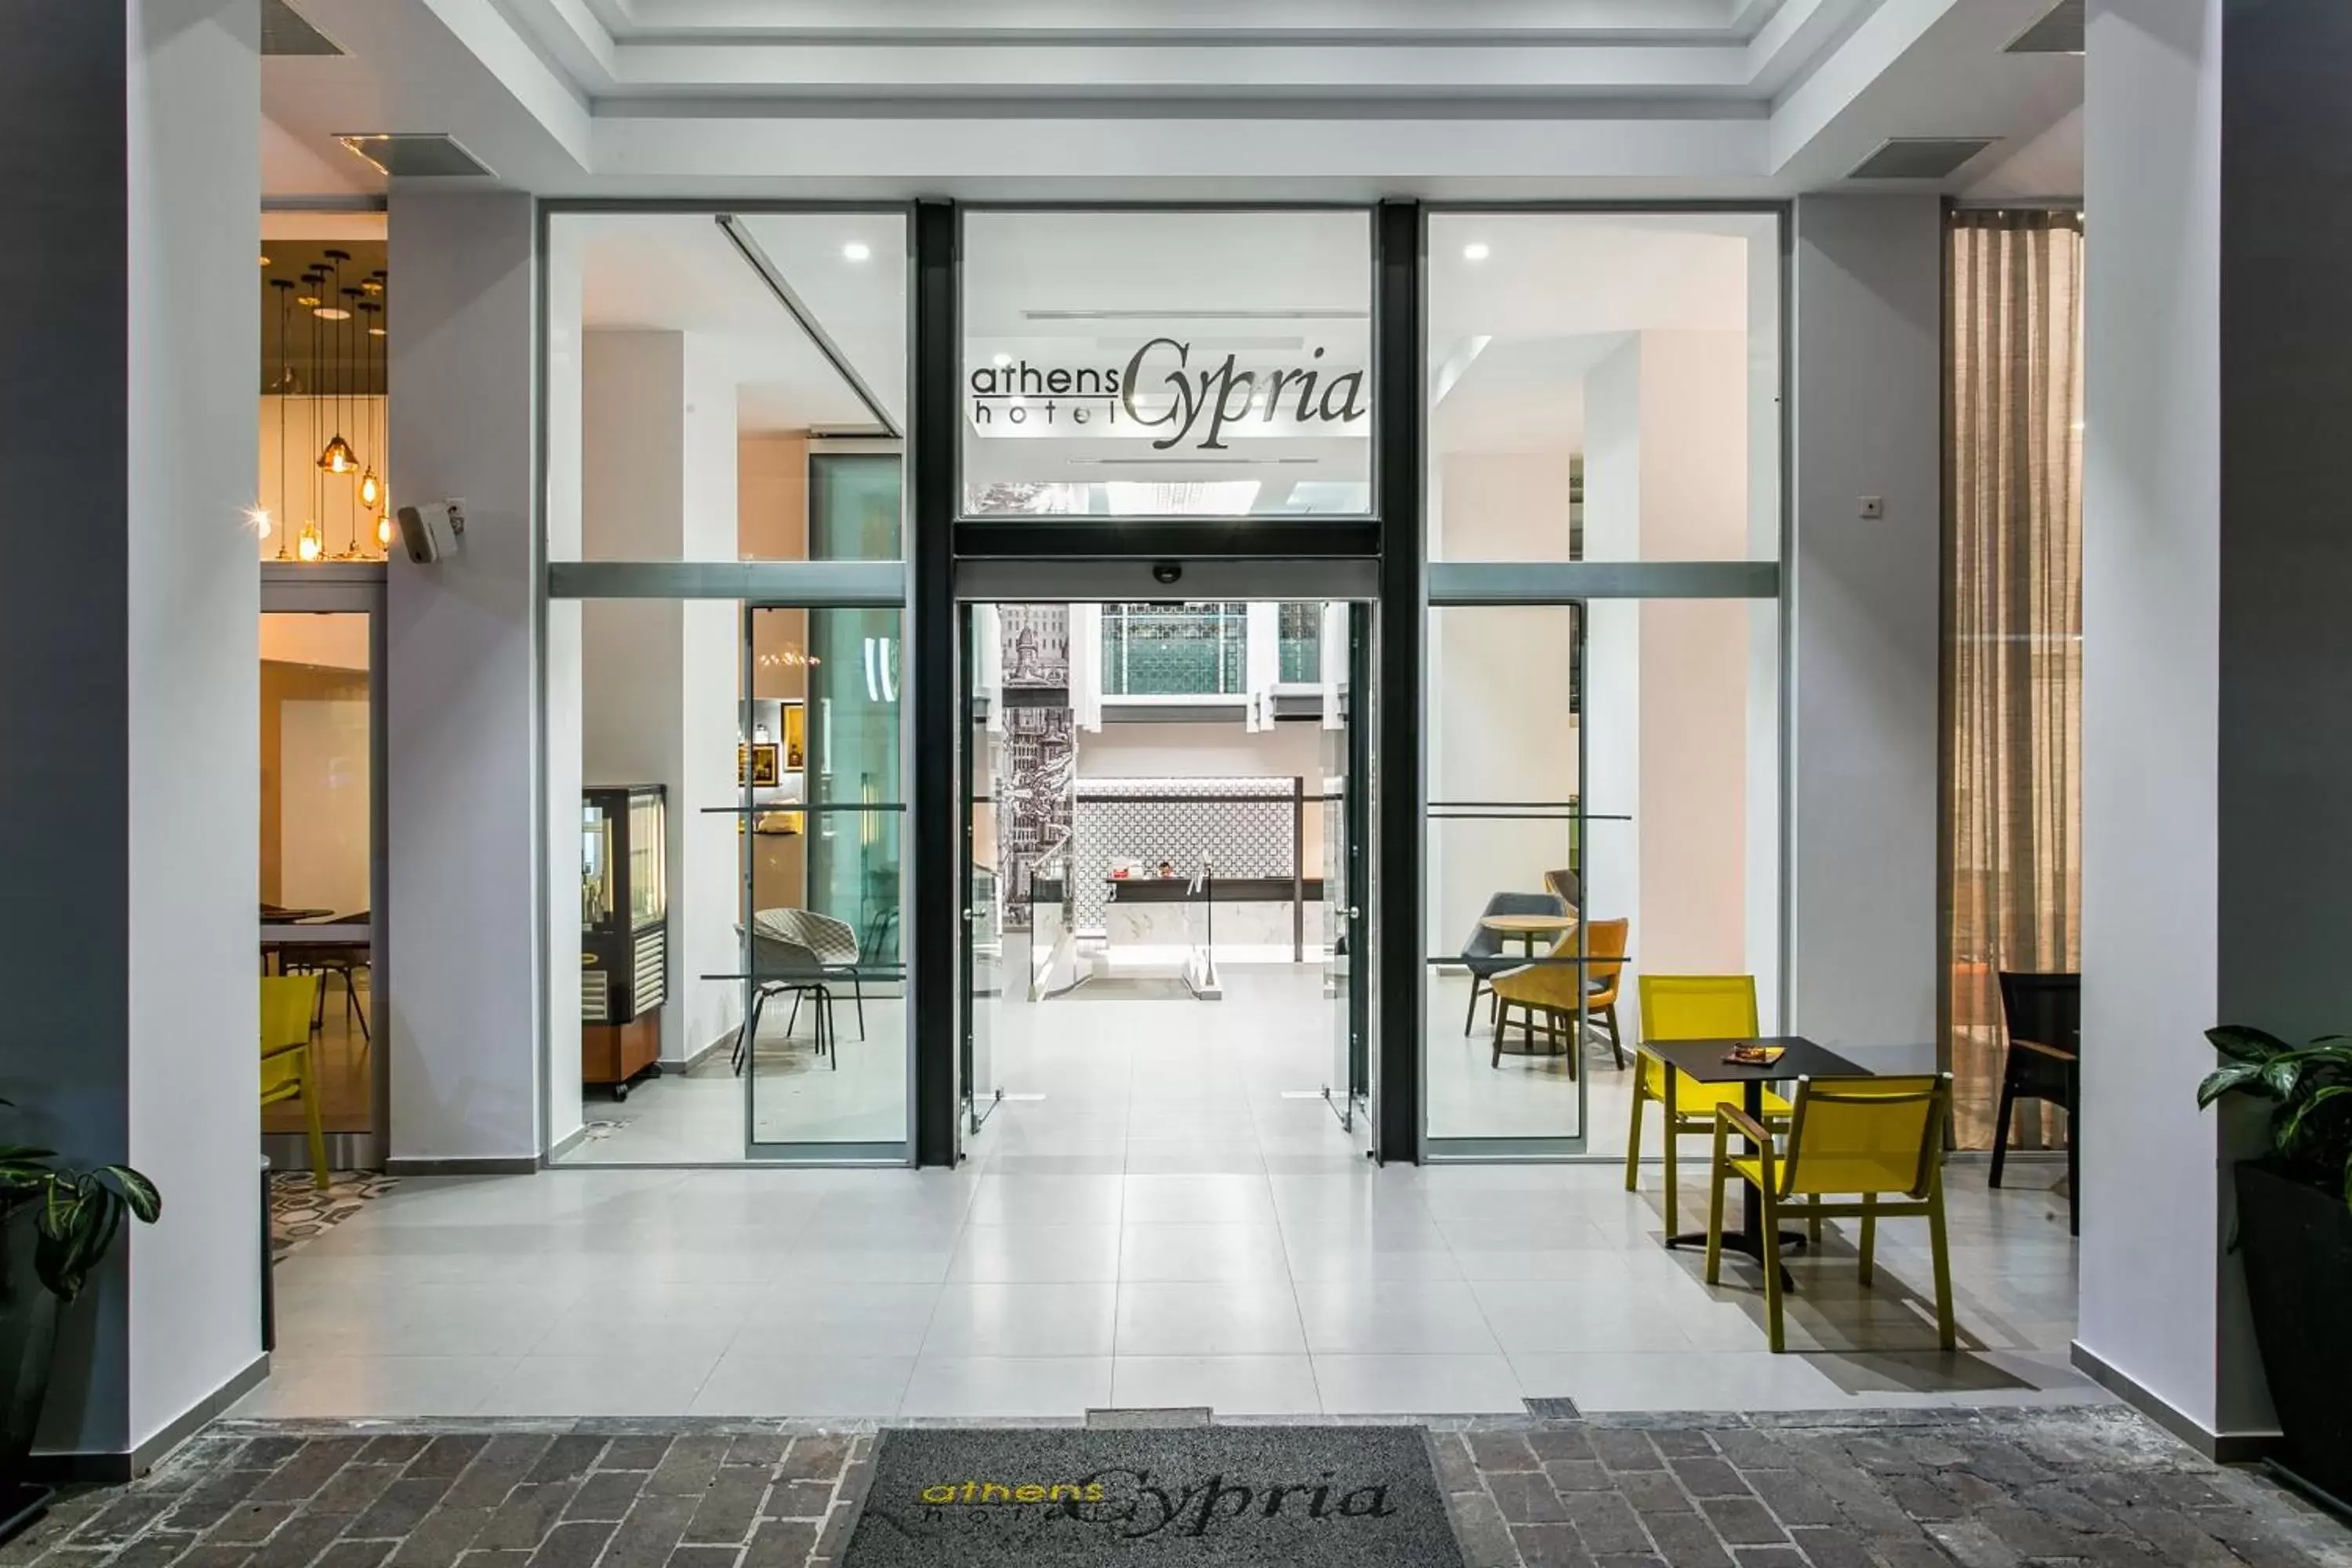 Facade/entrance in Athens Cypria Hotel